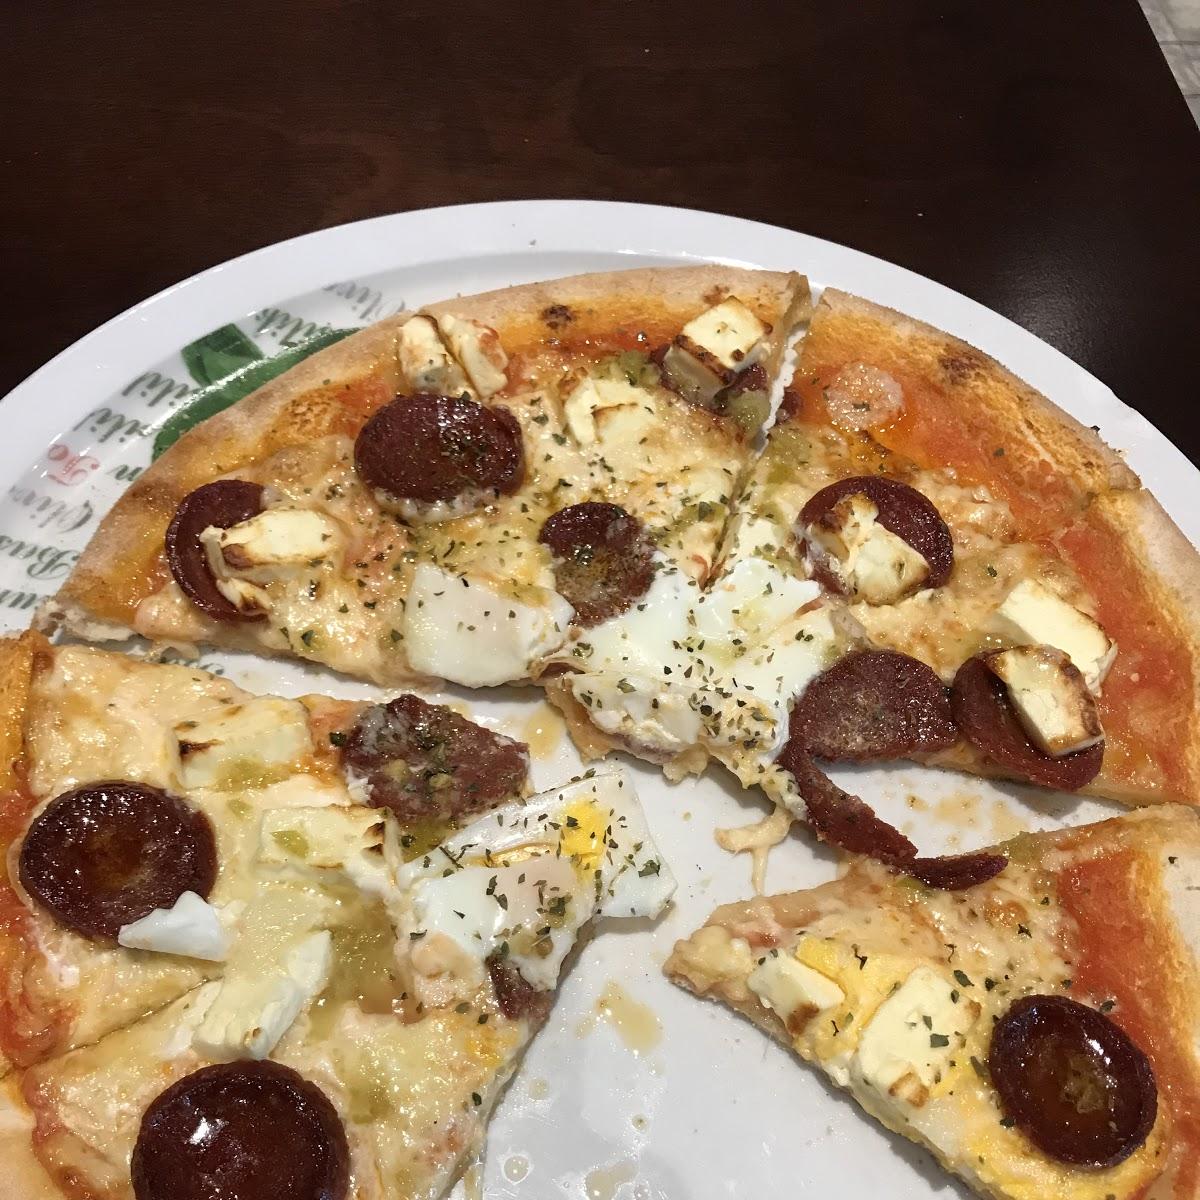 Pizzeria Da Nico